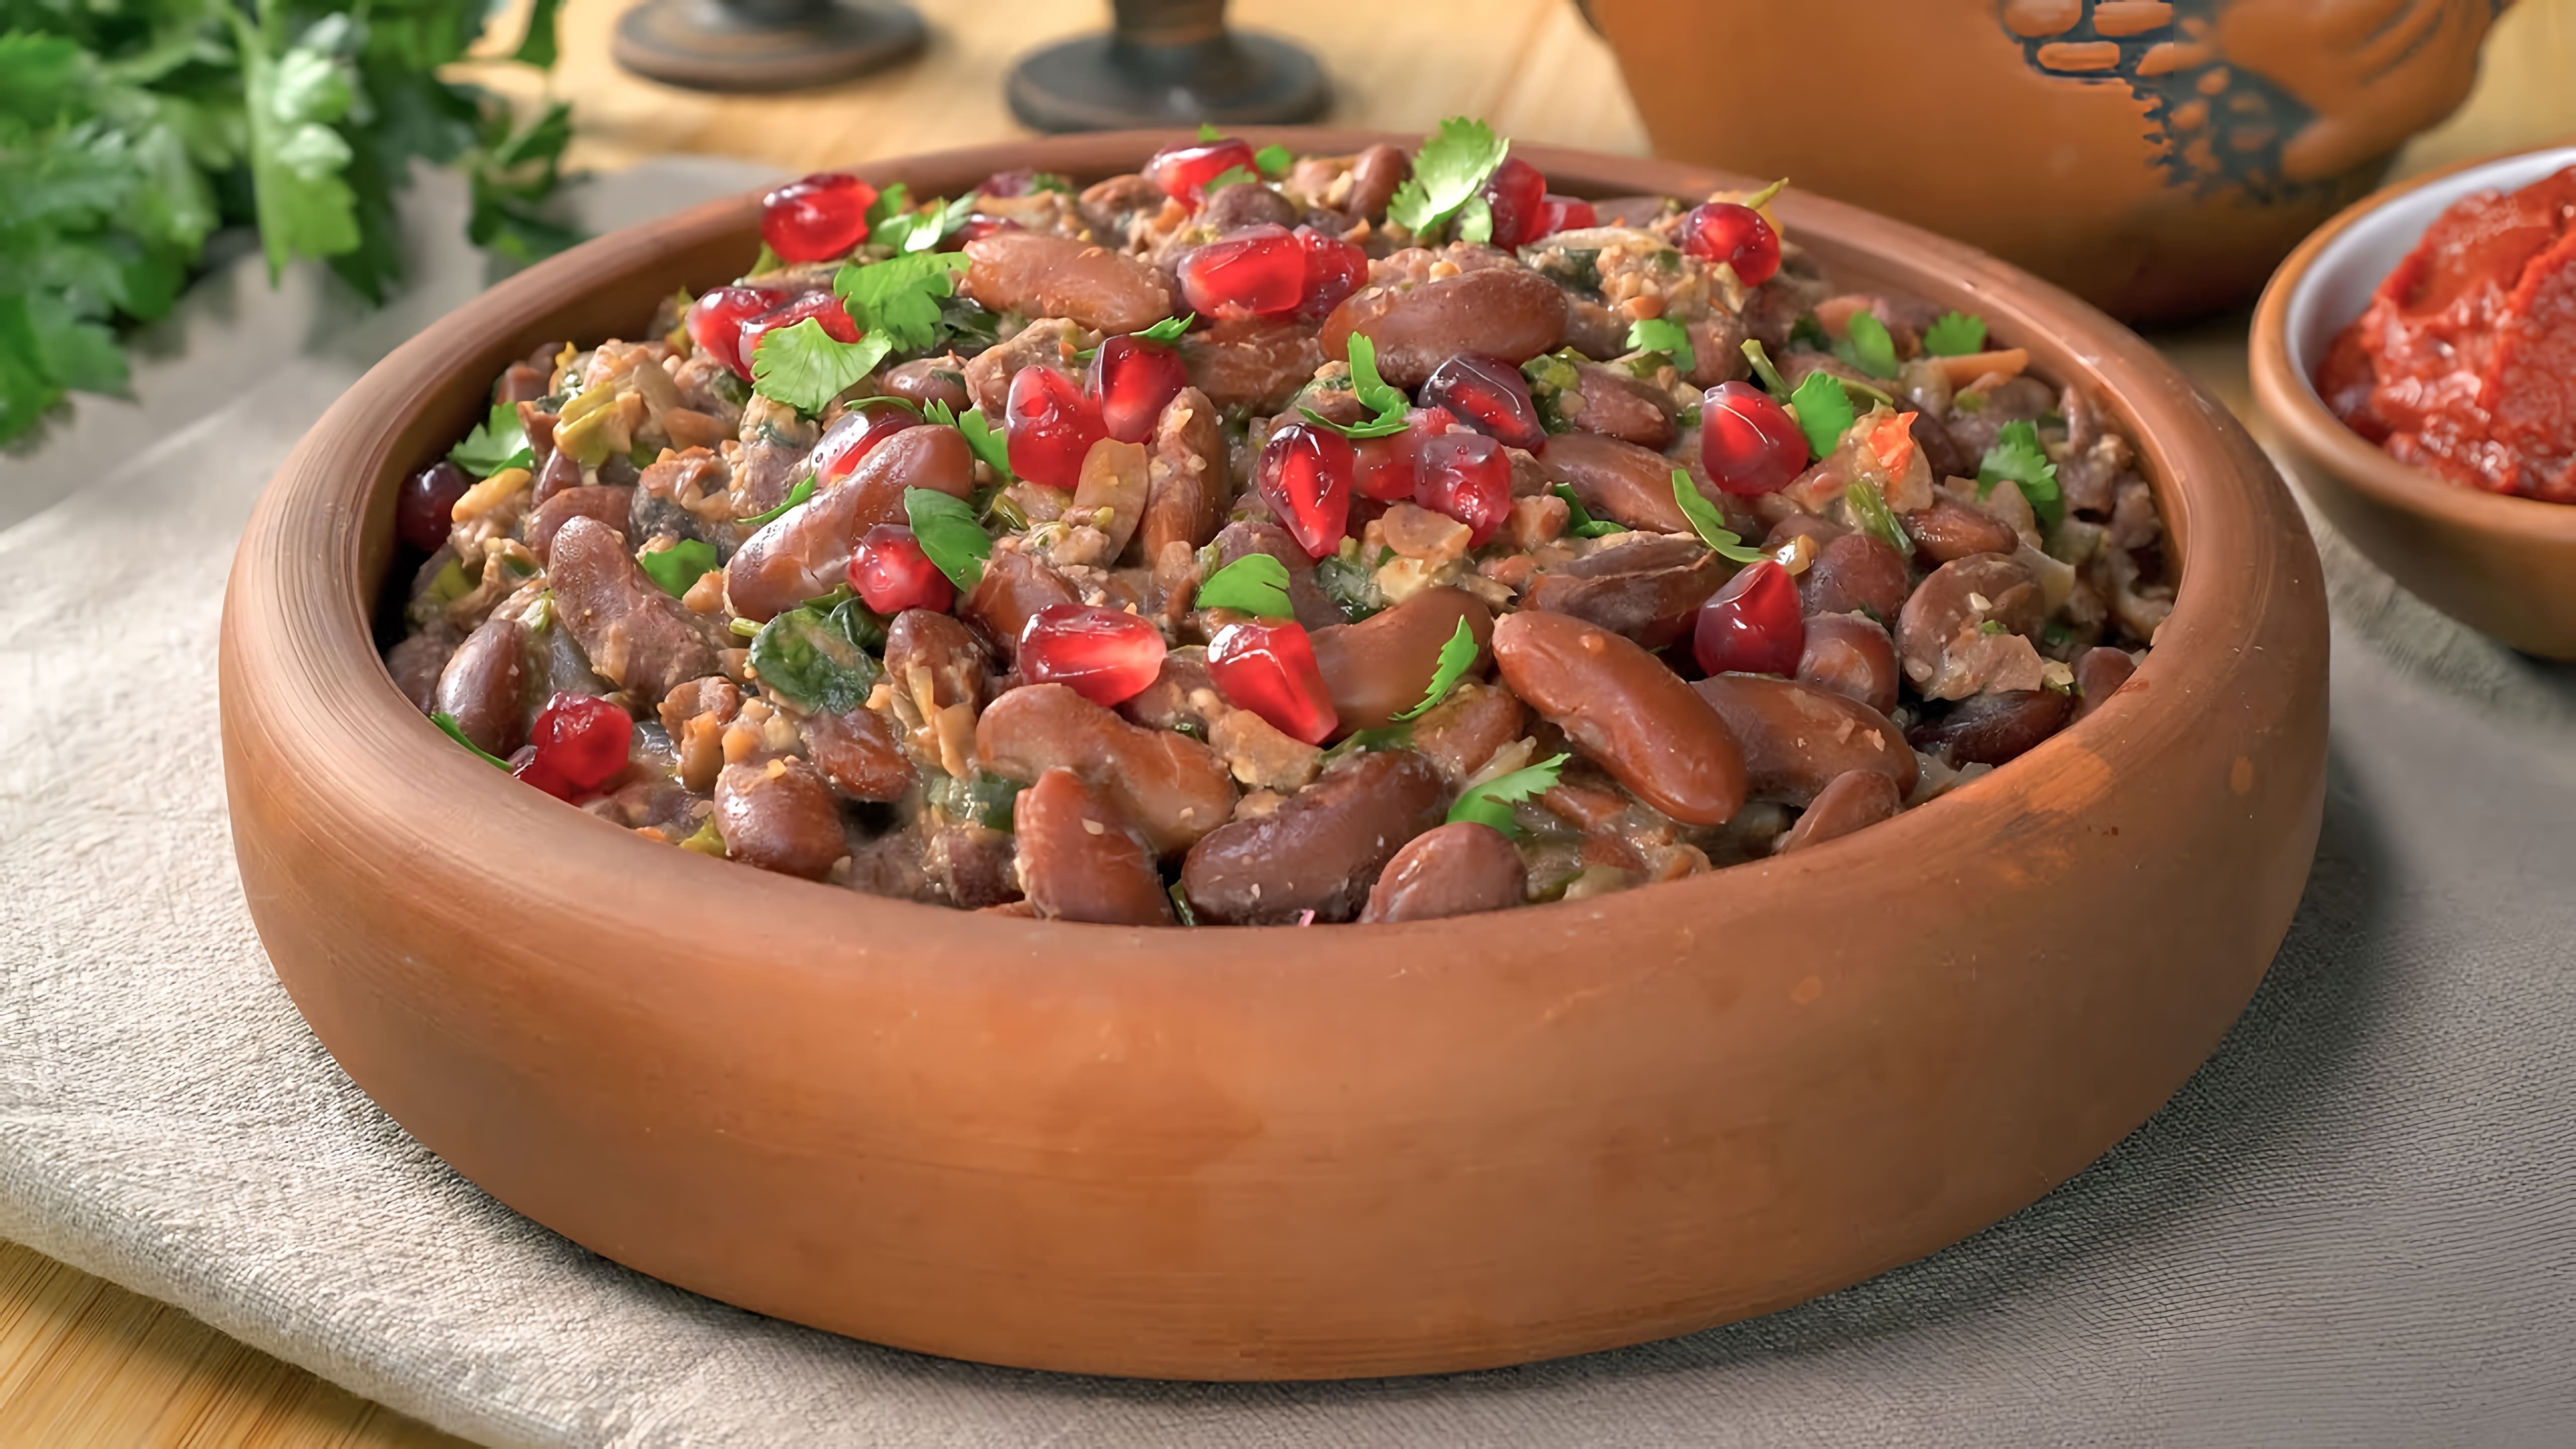 В данном видео демонстрируется рецепт приготовления лобио из красной фасоли, популярного блюда грузинской кухни